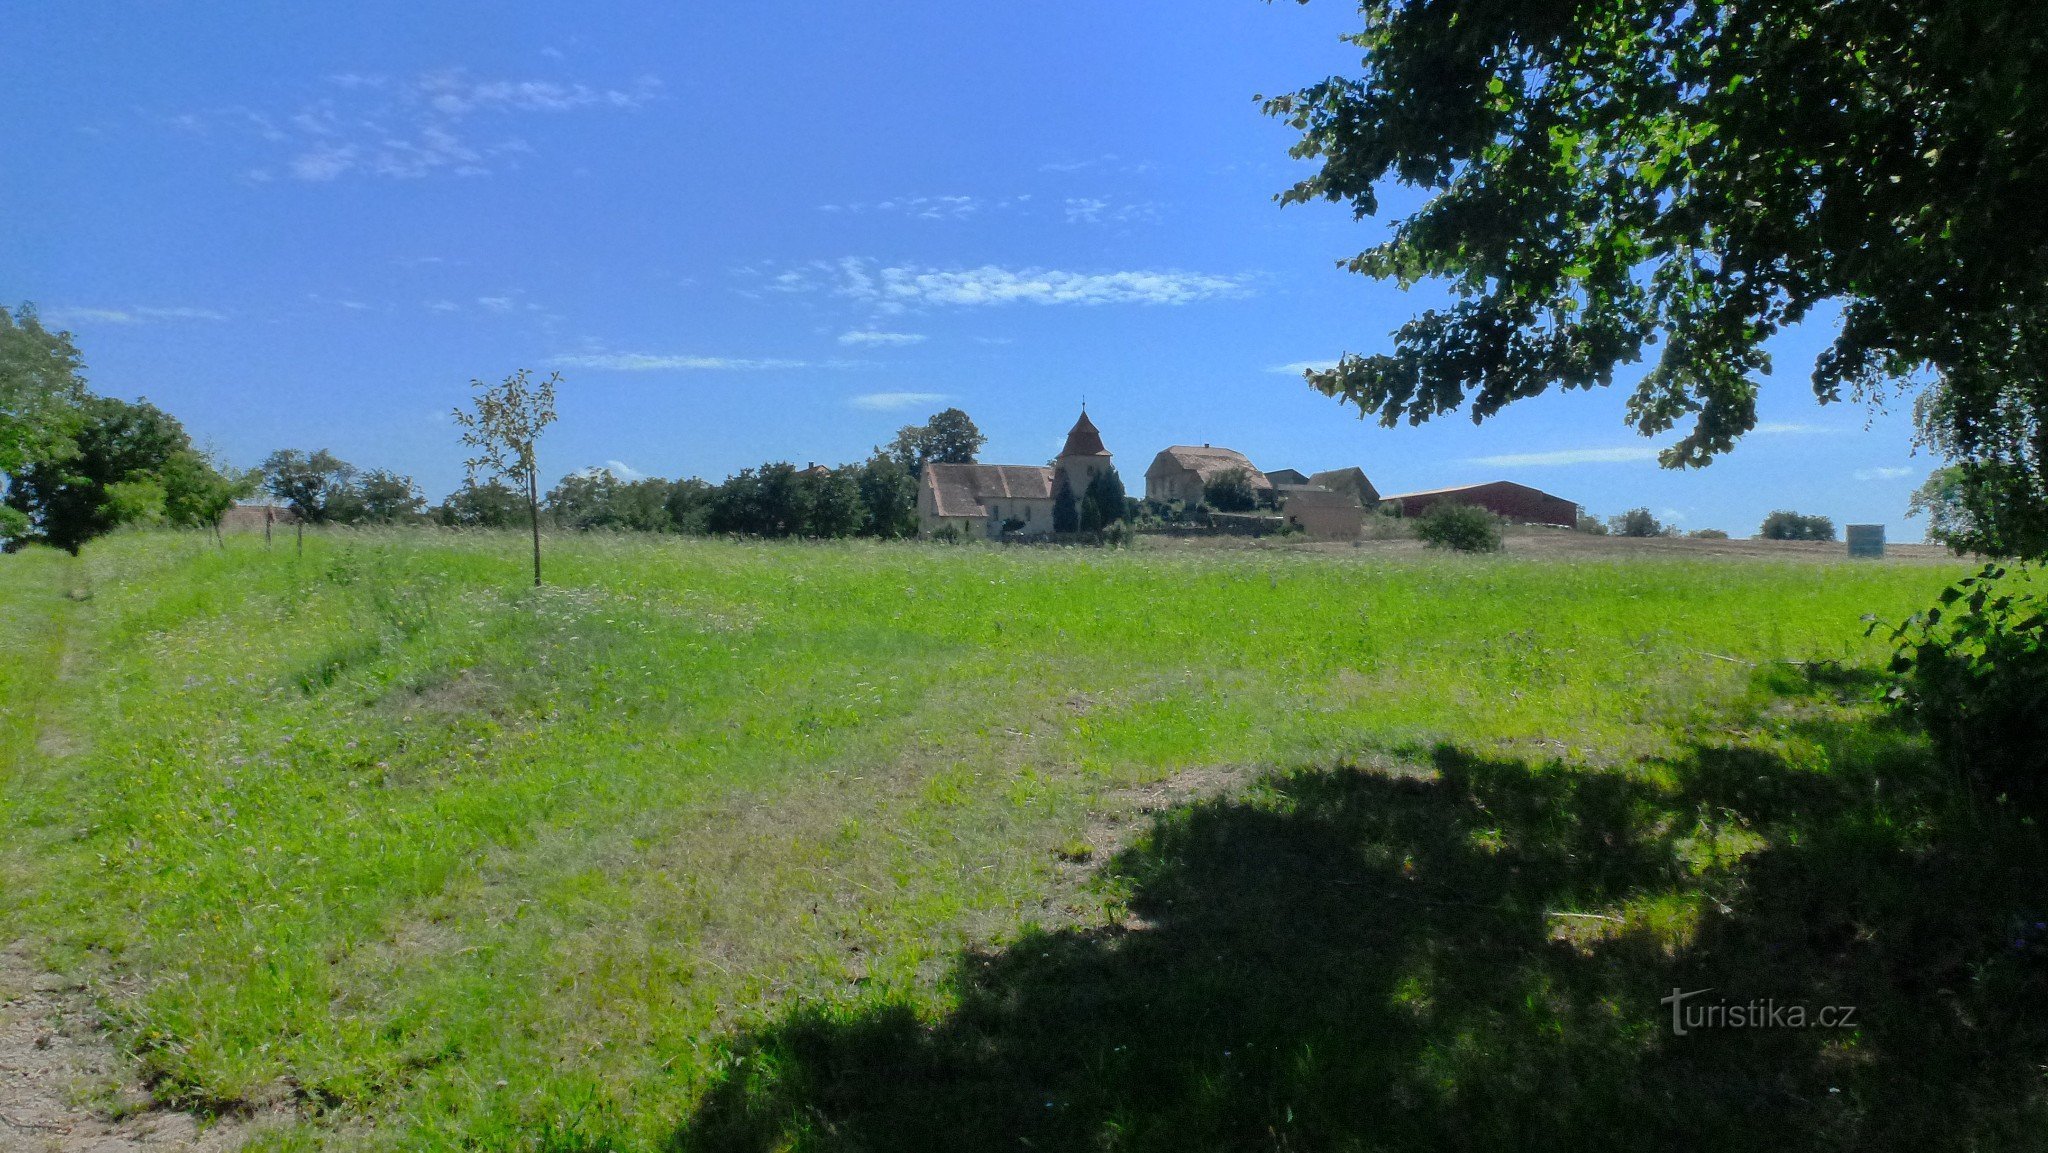 Dominantą wsi jest wczesnogotycki kościół św. Marcina, o którym już wspomniano